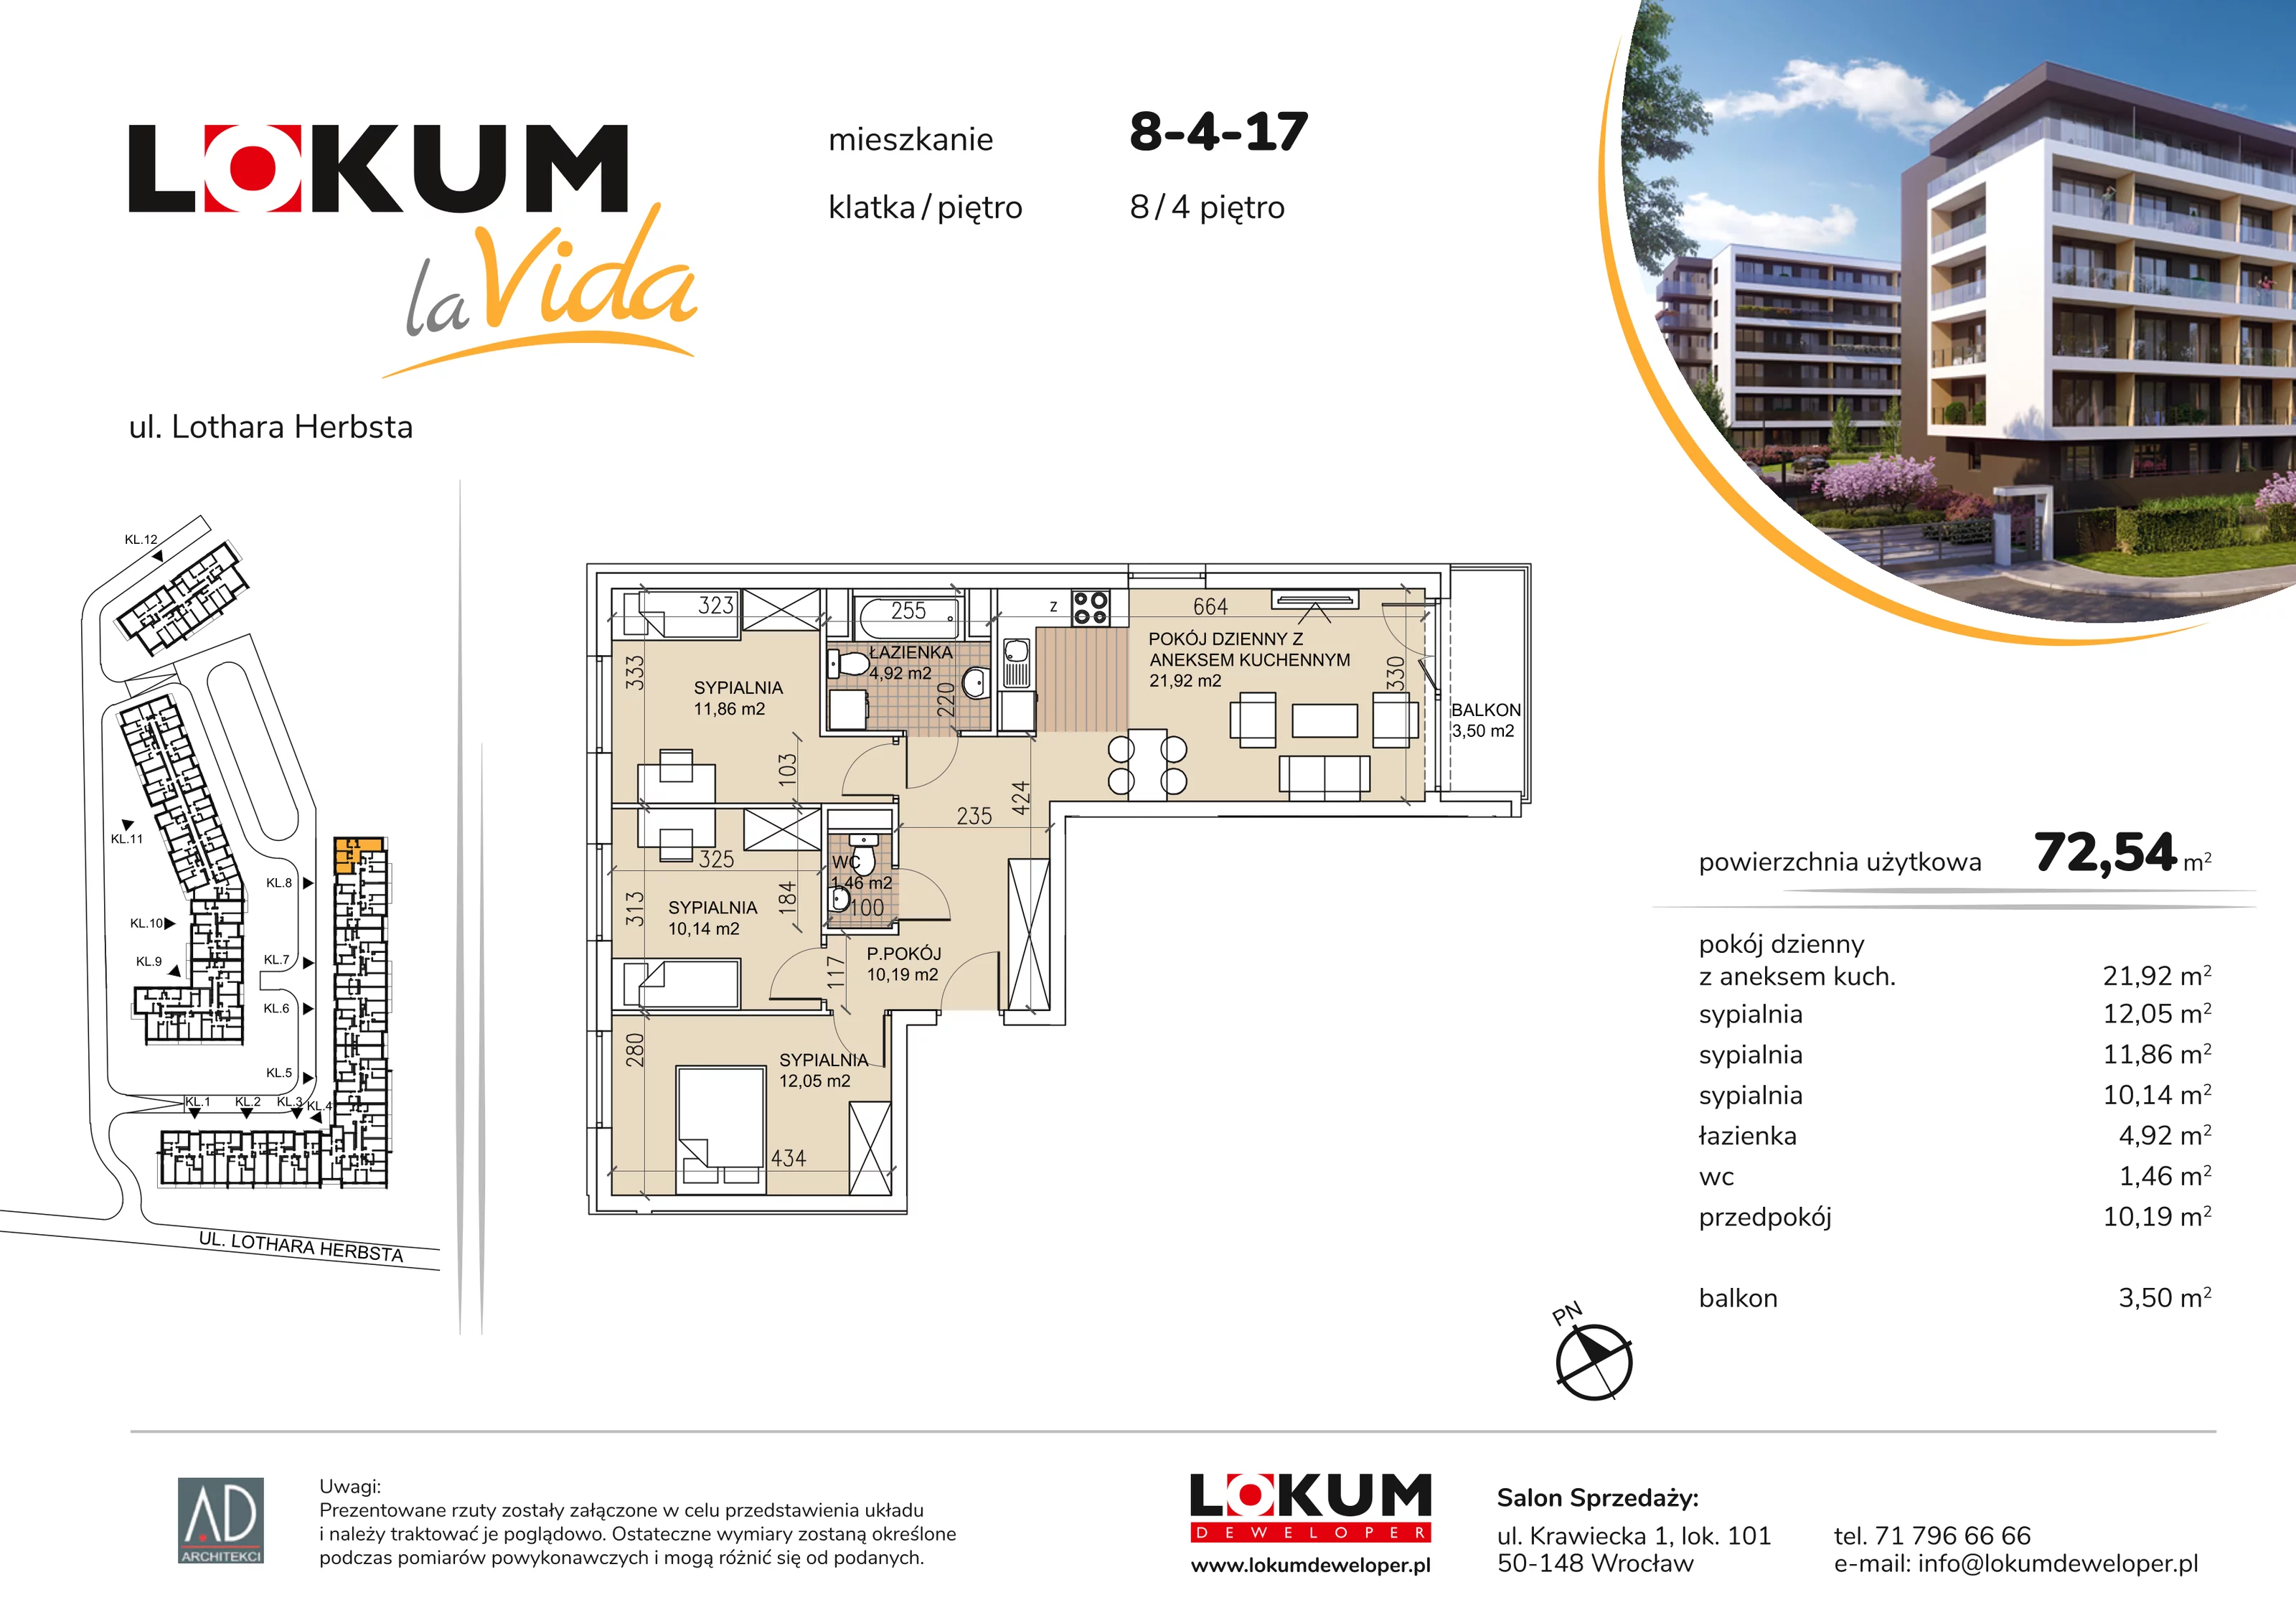 Mieszkanie 72,54 m², piętro 4, oferta nr 8-4-17, Lokum la Vida, Wrocław, Sołtysowice, ul. Lothara Herbsta